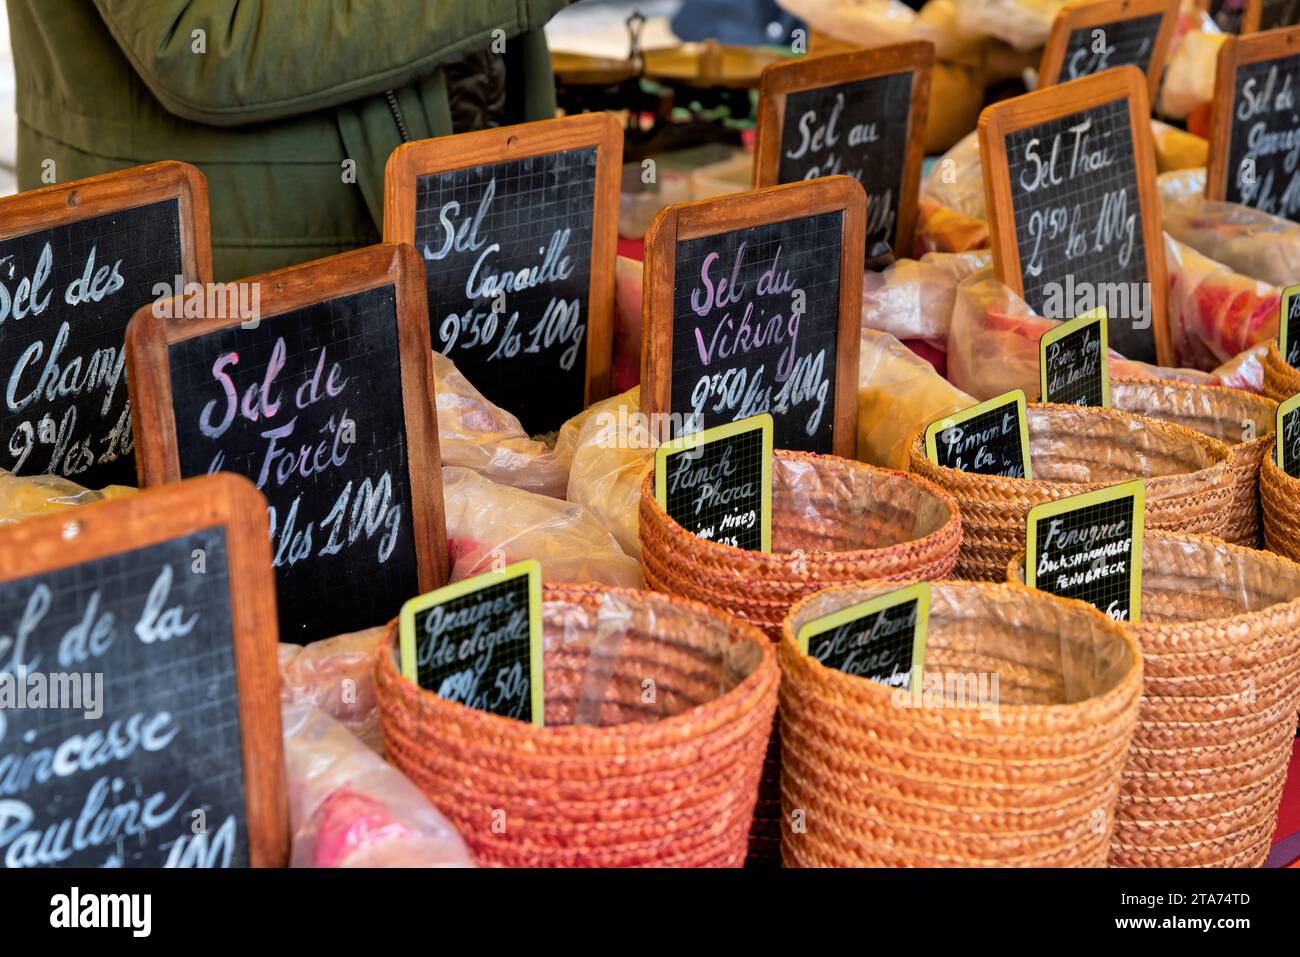 le centre-ville de Narbonne, le marché local, épices et vanneries colorées Foto Stock